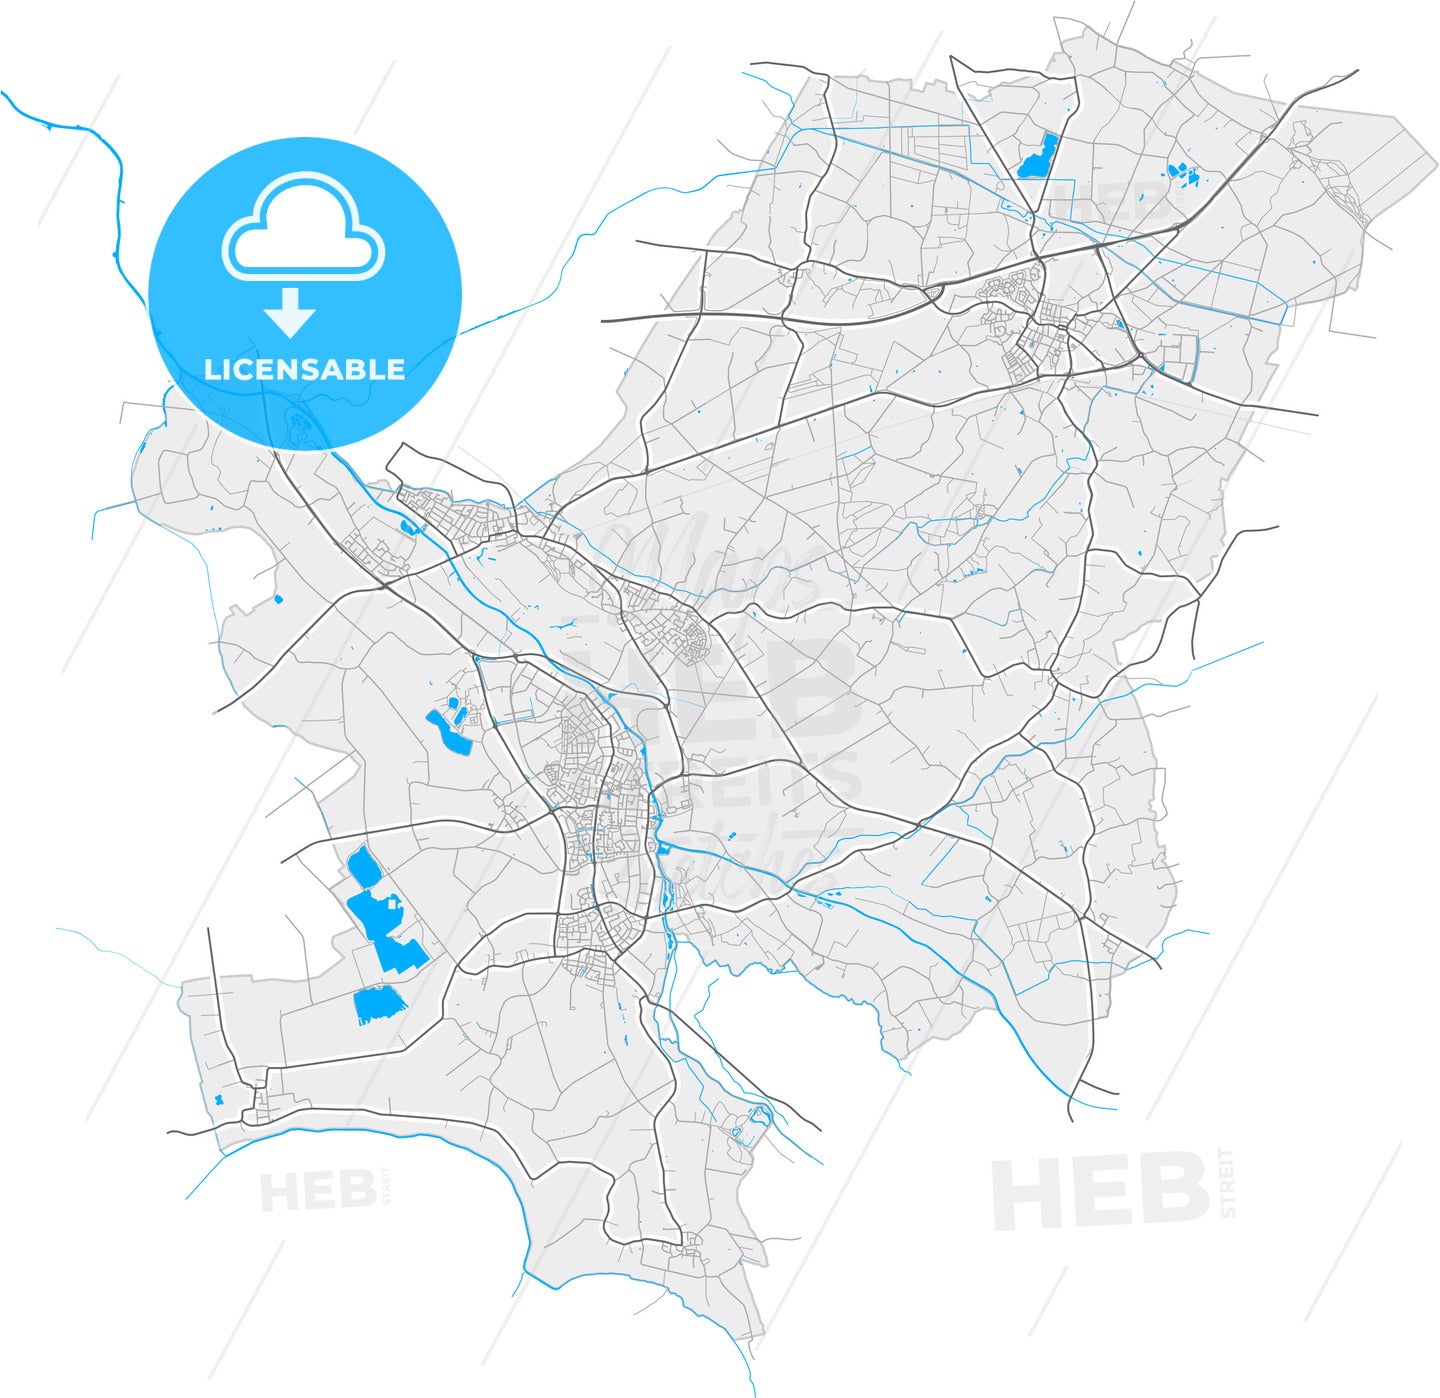 Oude IJsselstreek, Gelderland, Netherlands, high quality vector map